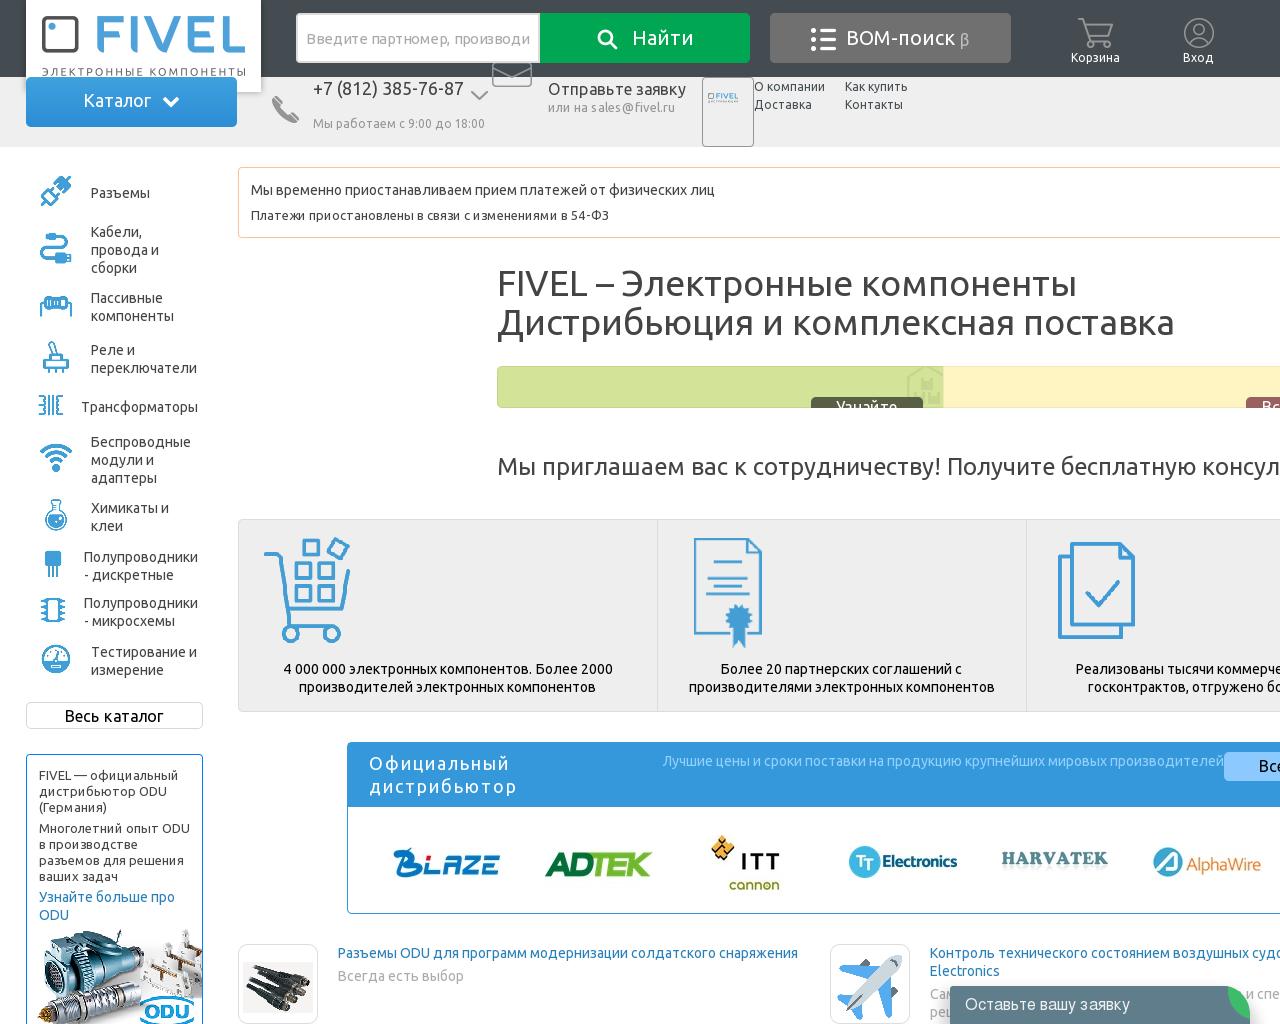 Изображение сайта fivel.ru в разрешении 1280x1024